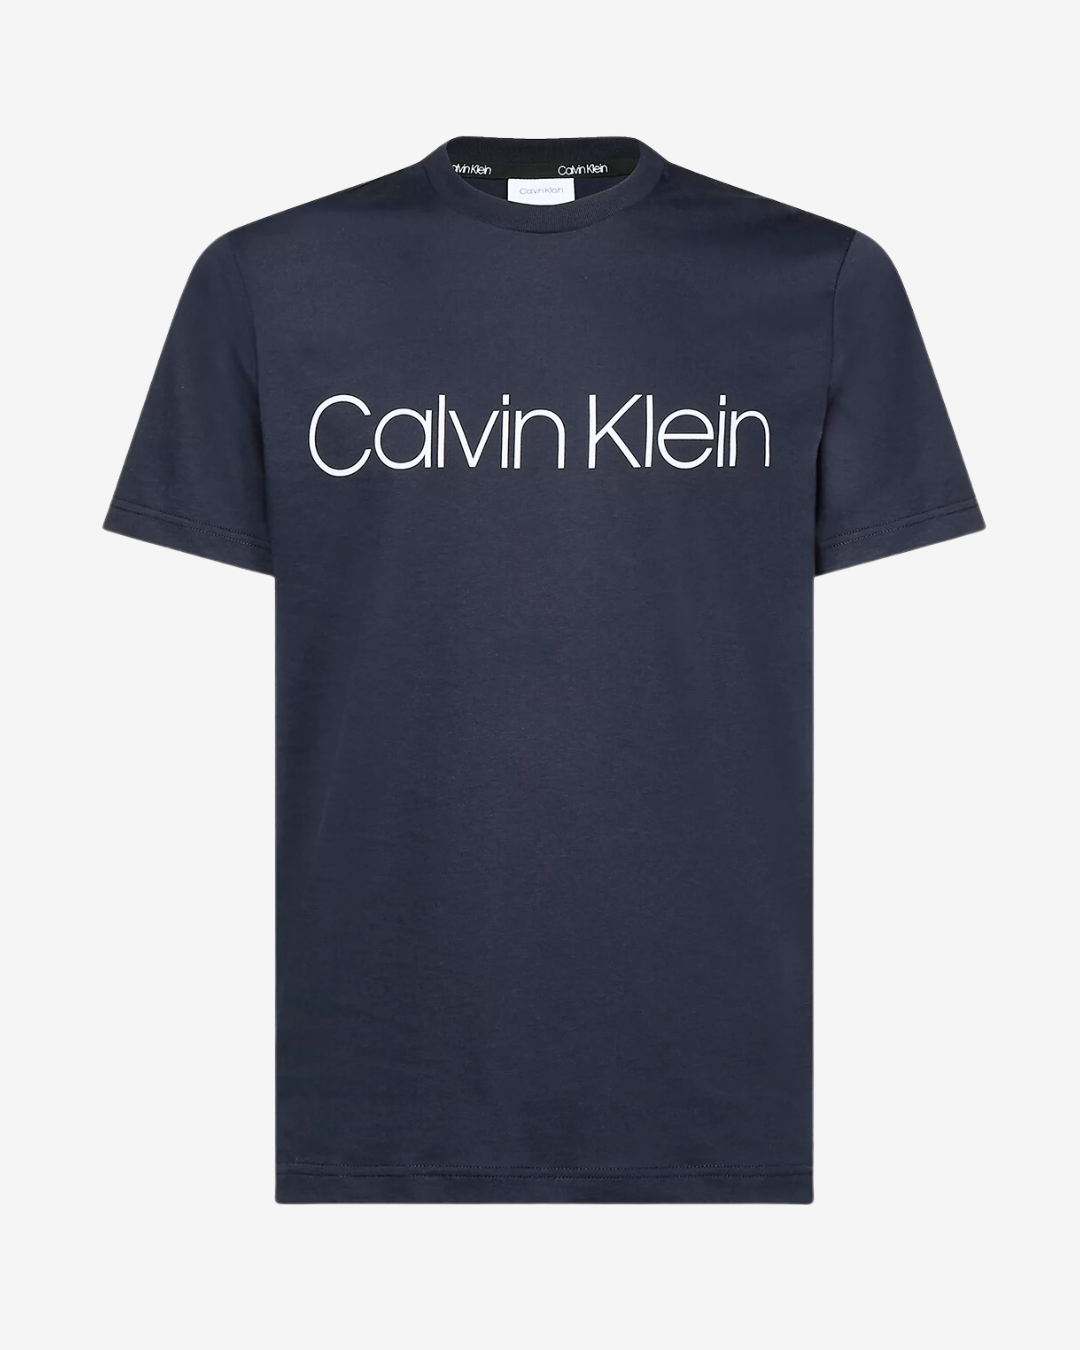 Billede af Calvin Klein Front logo t-shirt - Navy - Str. XL - Modish.dk